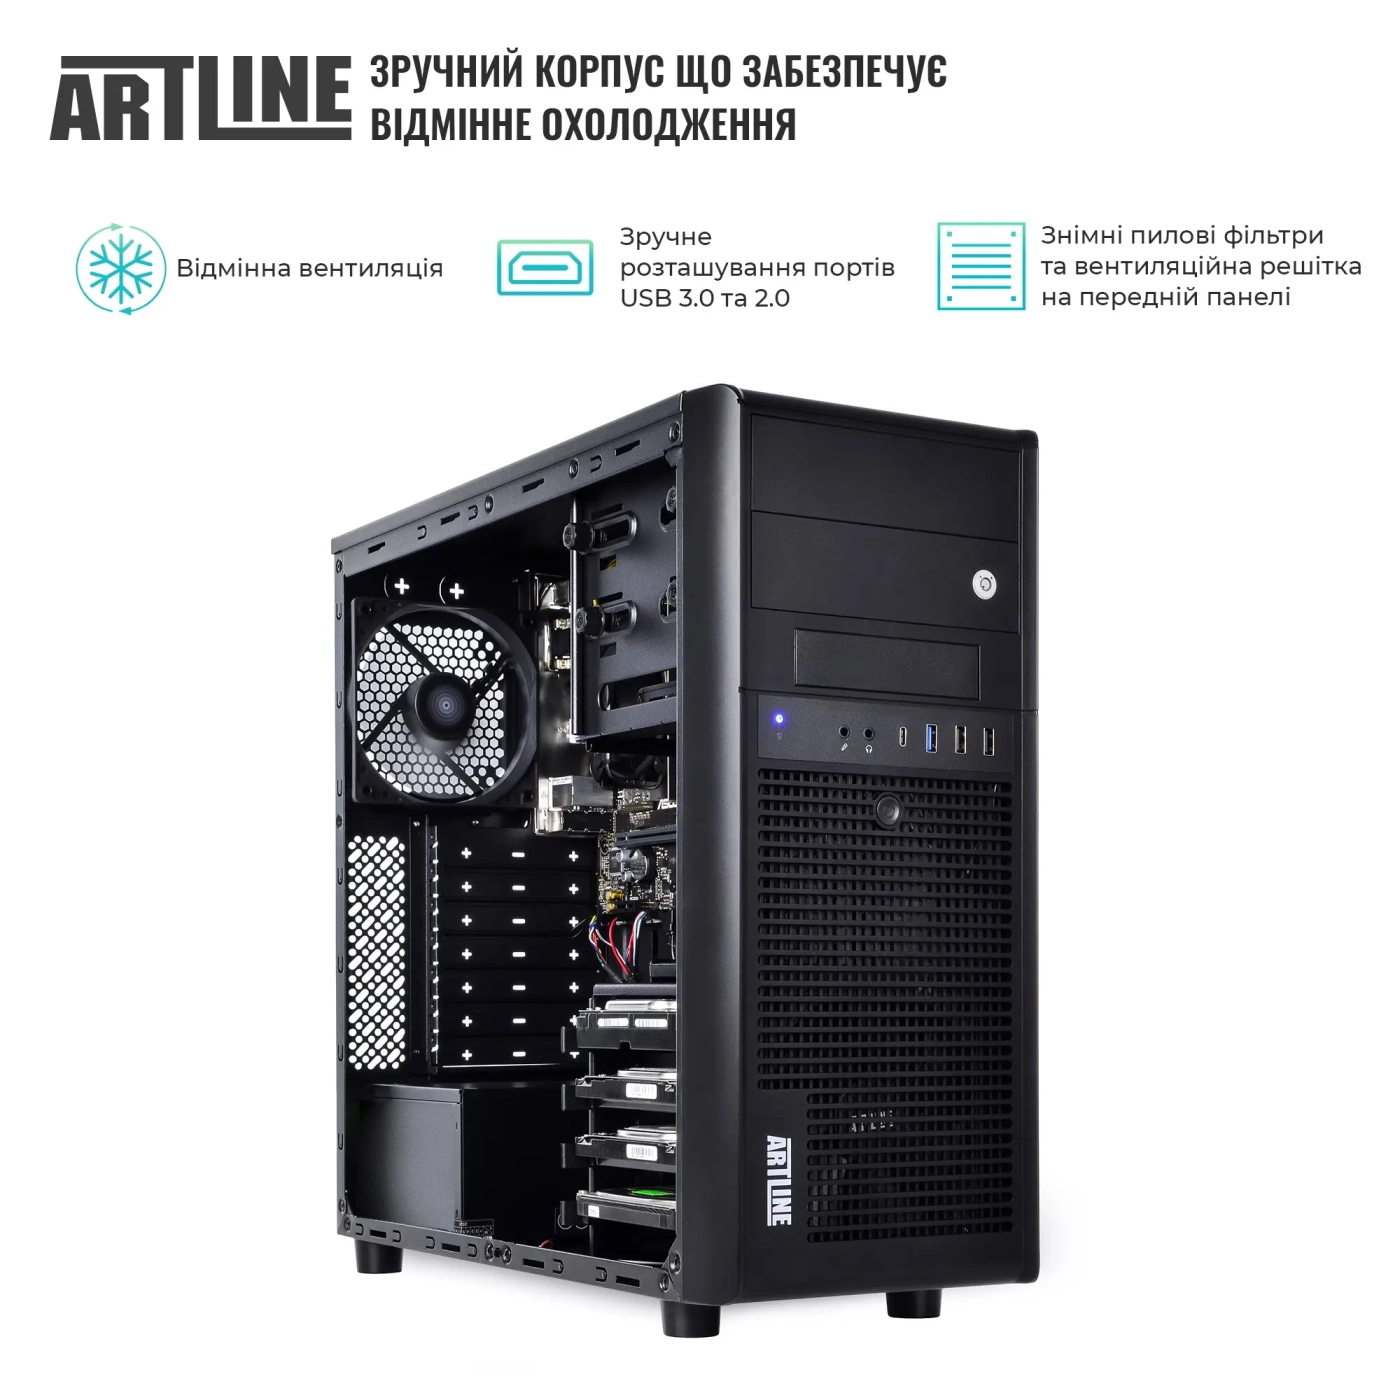 Купить Сервер ARTLINE Business T34 (T34v30) - фото 3